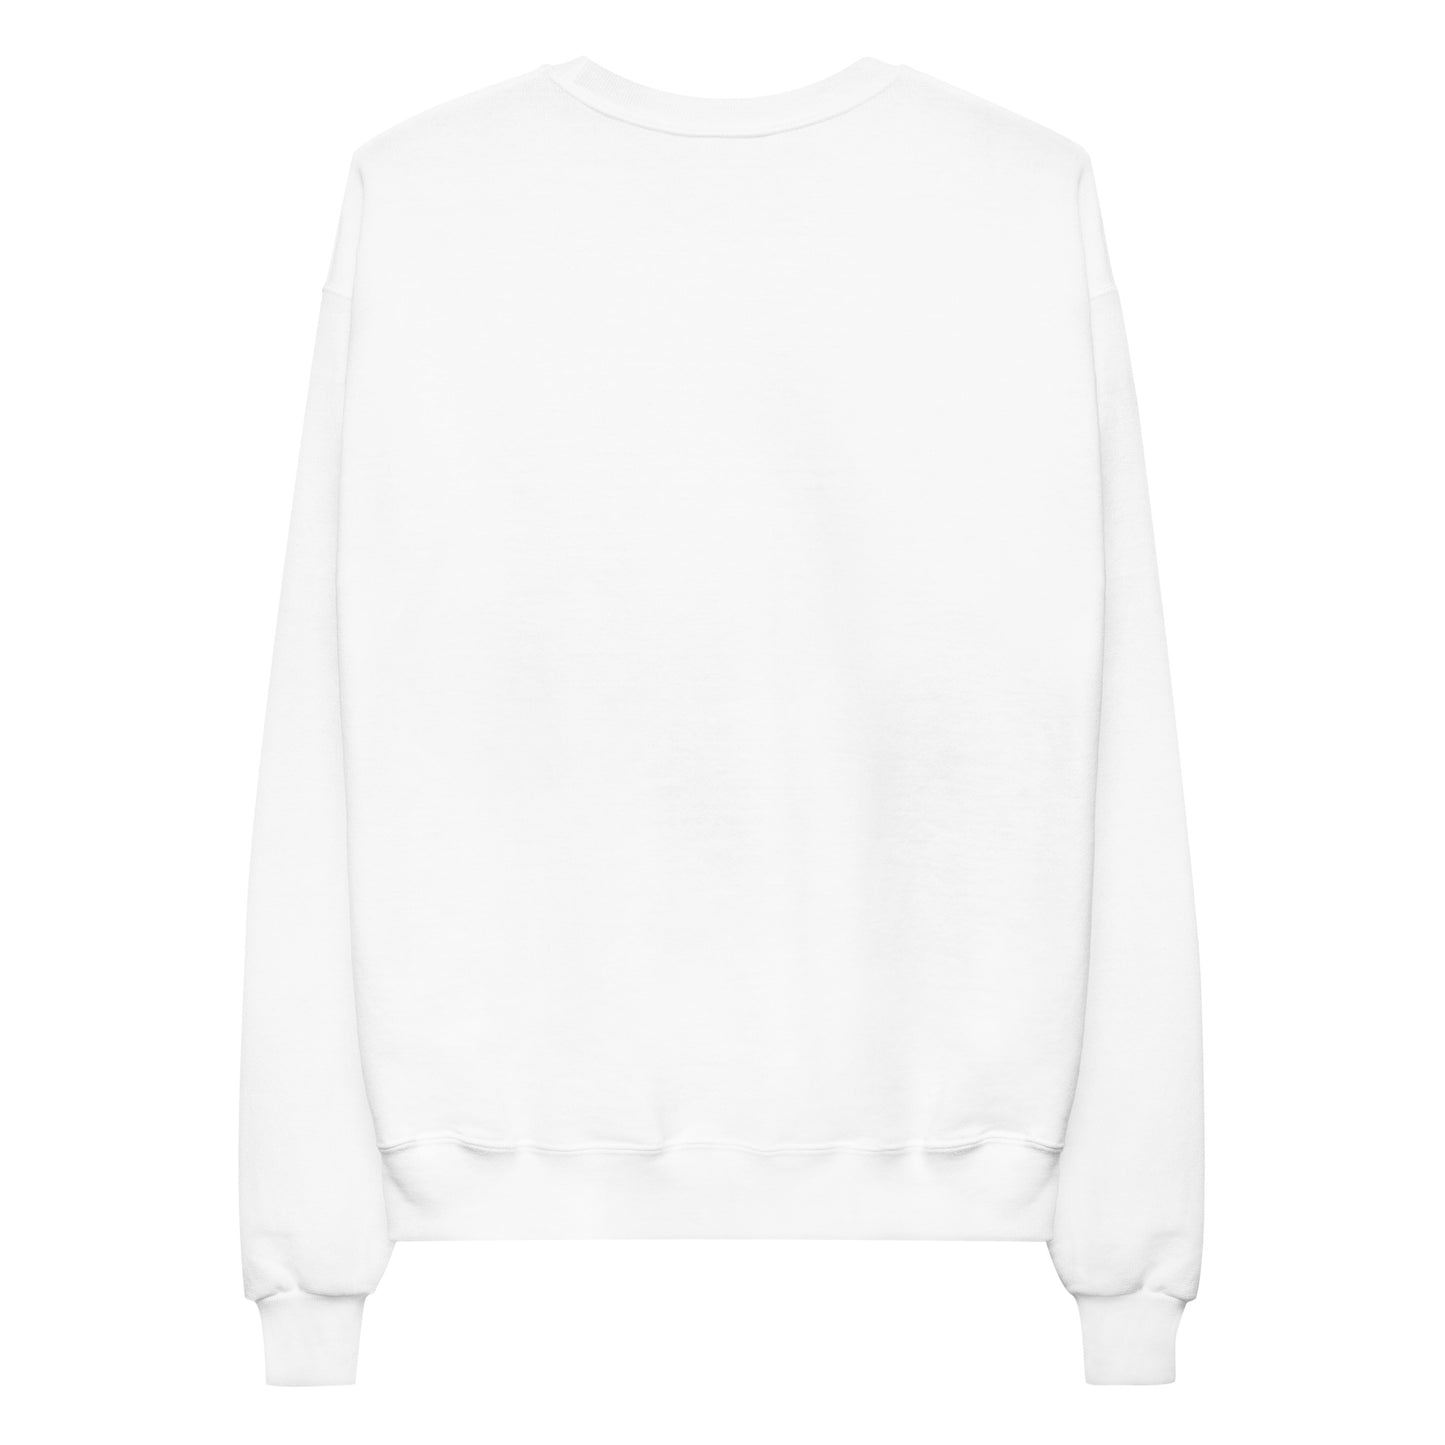 Paris Unisex Fleece Sweatshirt